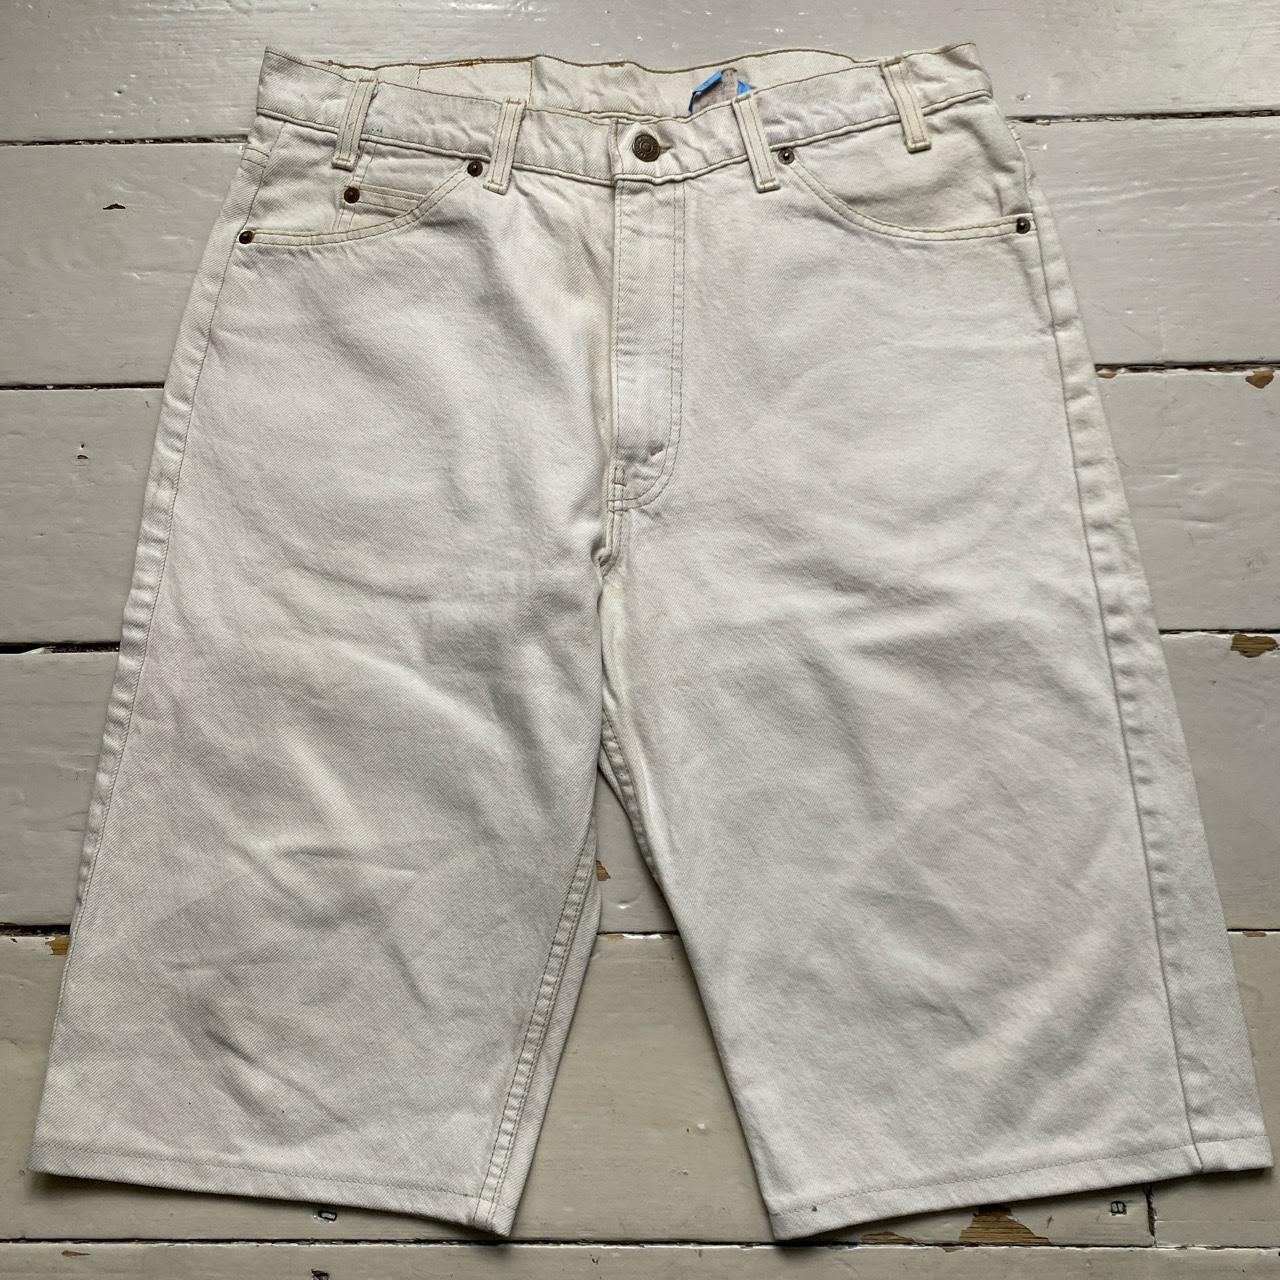 Levis 550 Vintage Cream White Baggy Jean Short Jorts